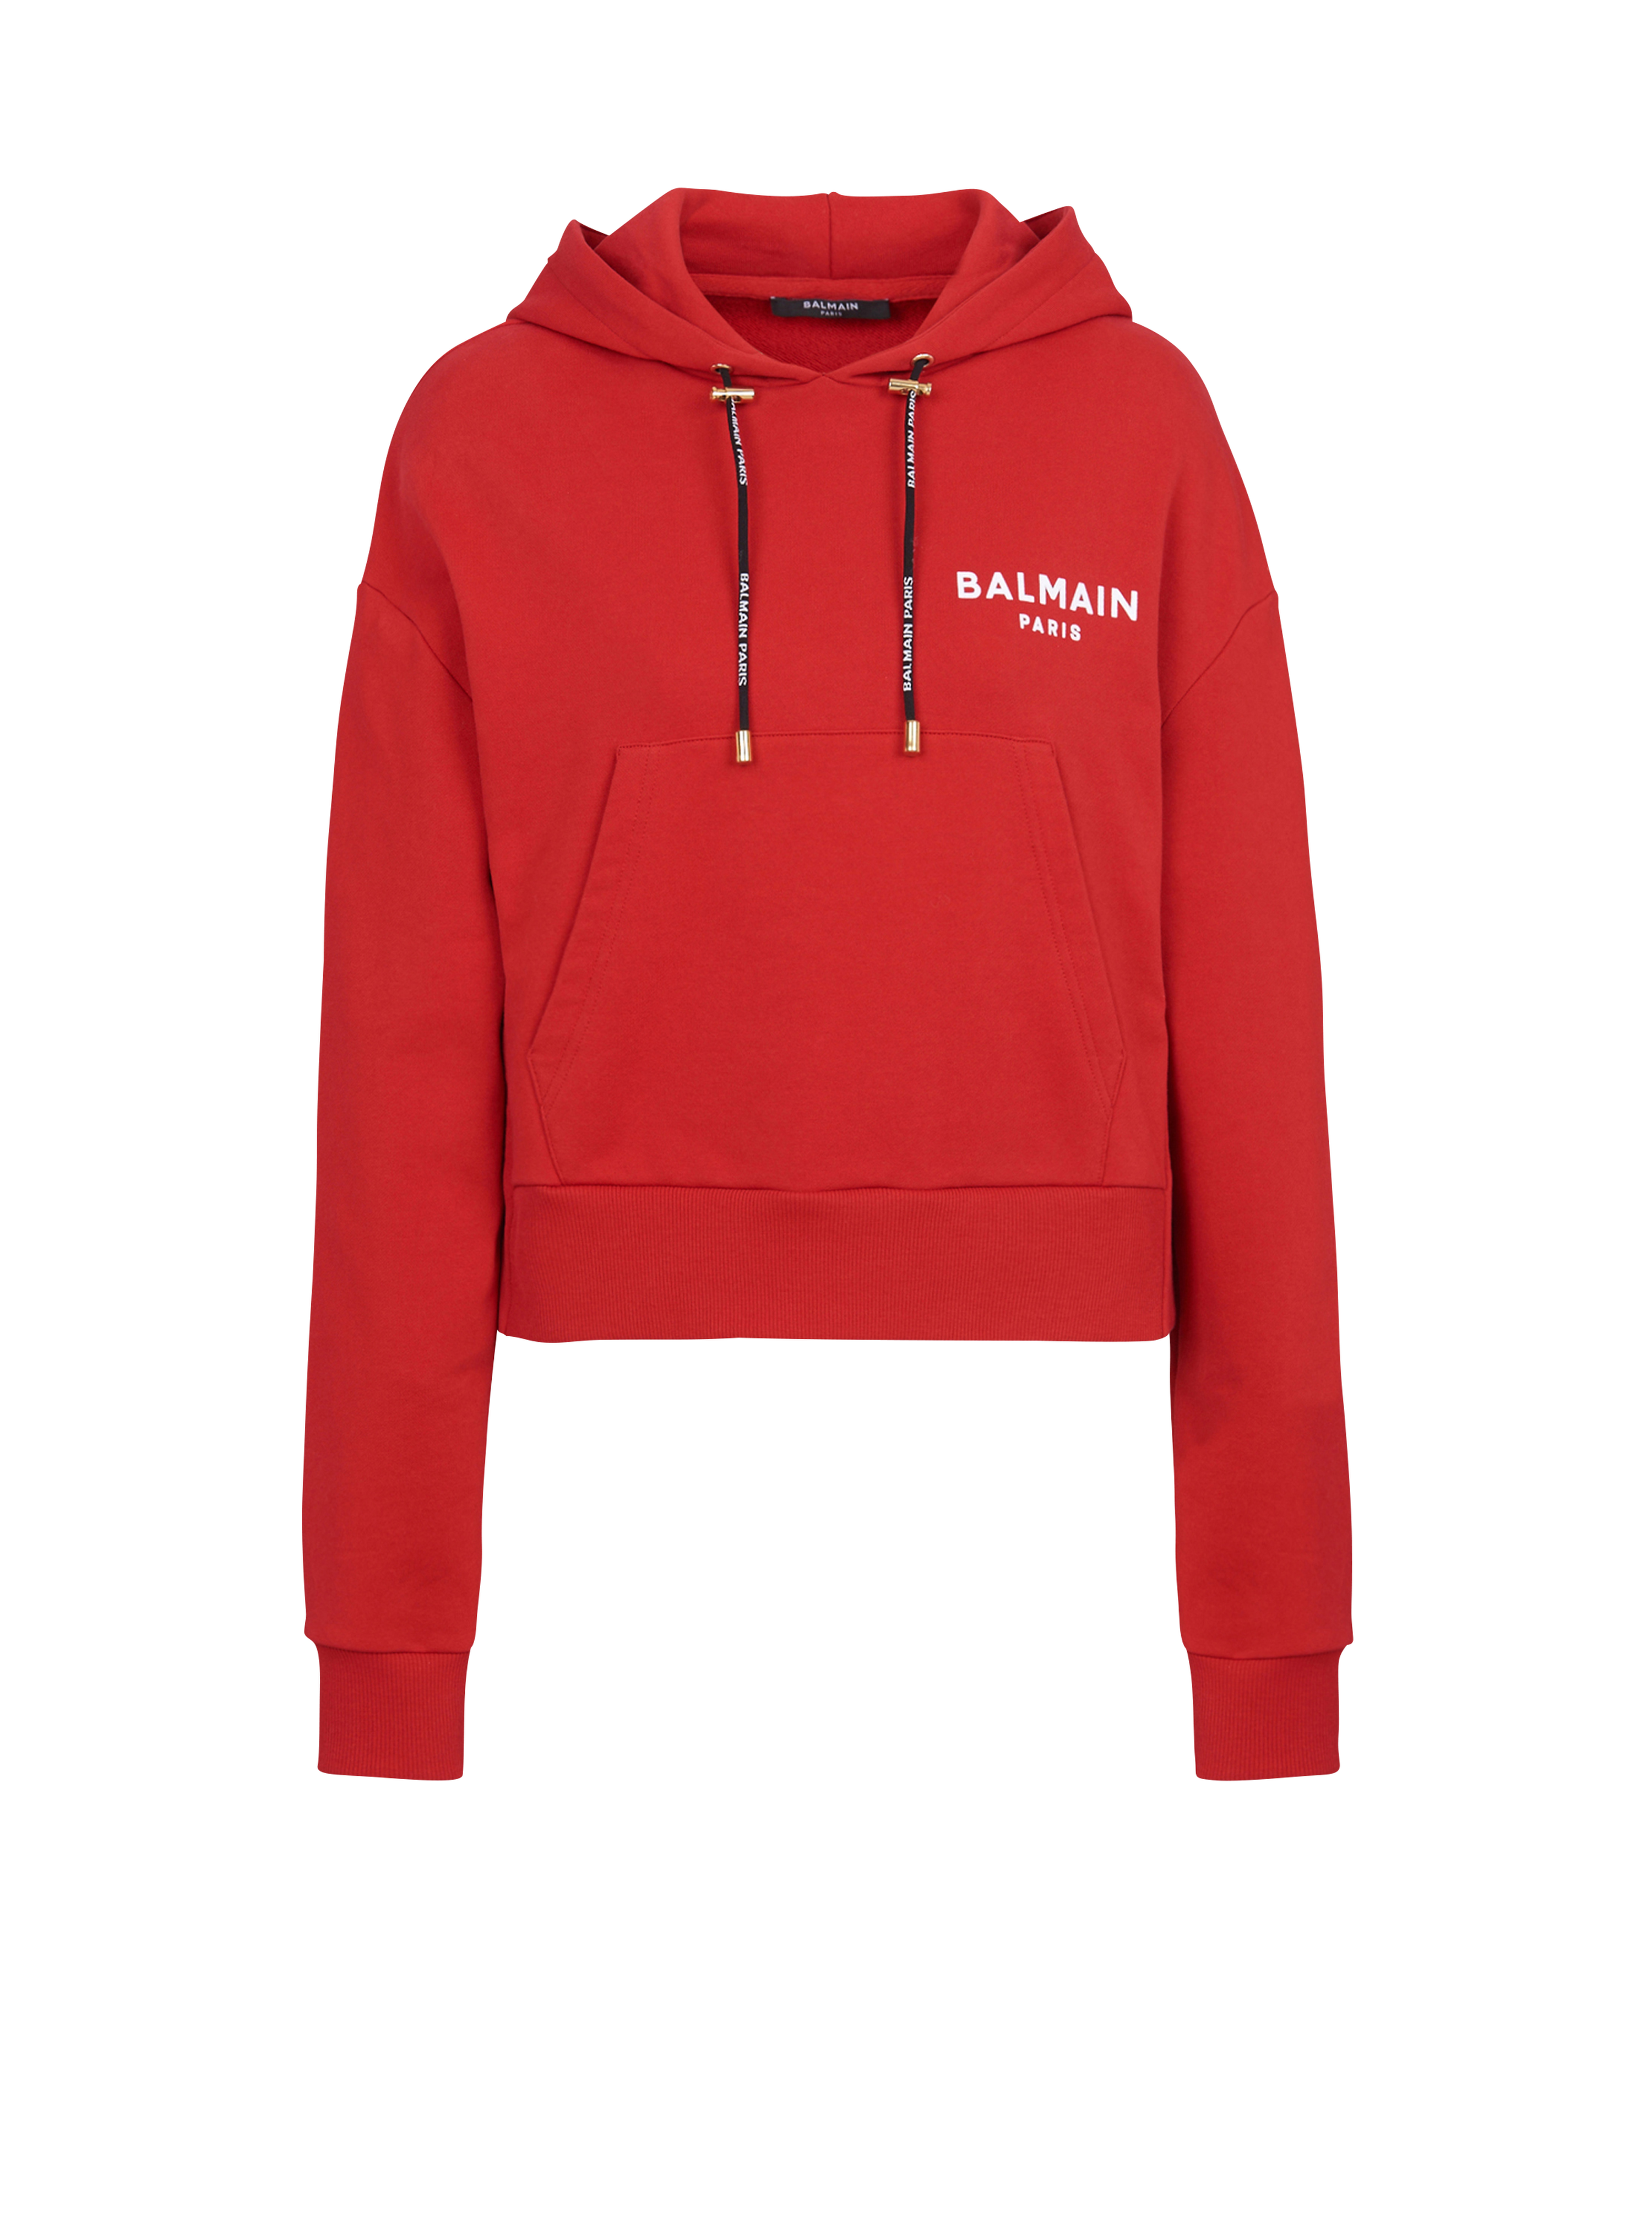 Sweat court éco-design en coton avec logo floqué Balmain, rouge